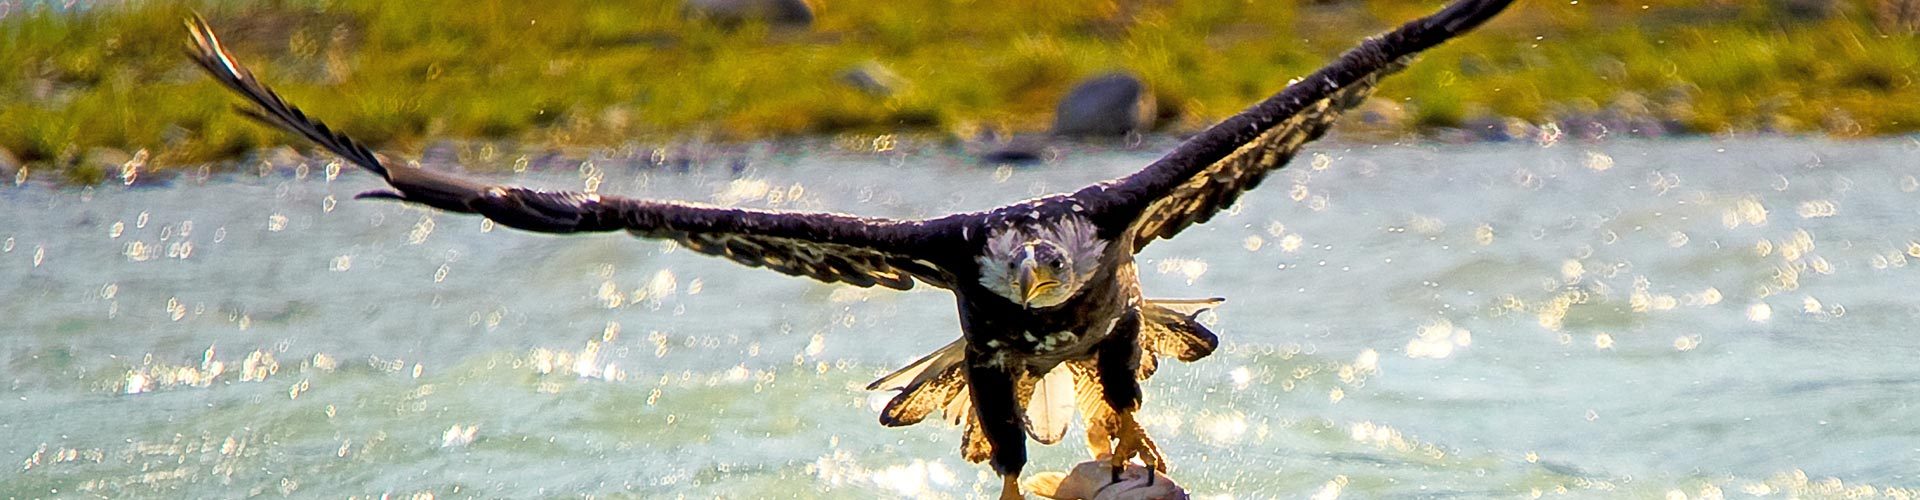 Adler mit Beute im Wrangell St. Elias National Park